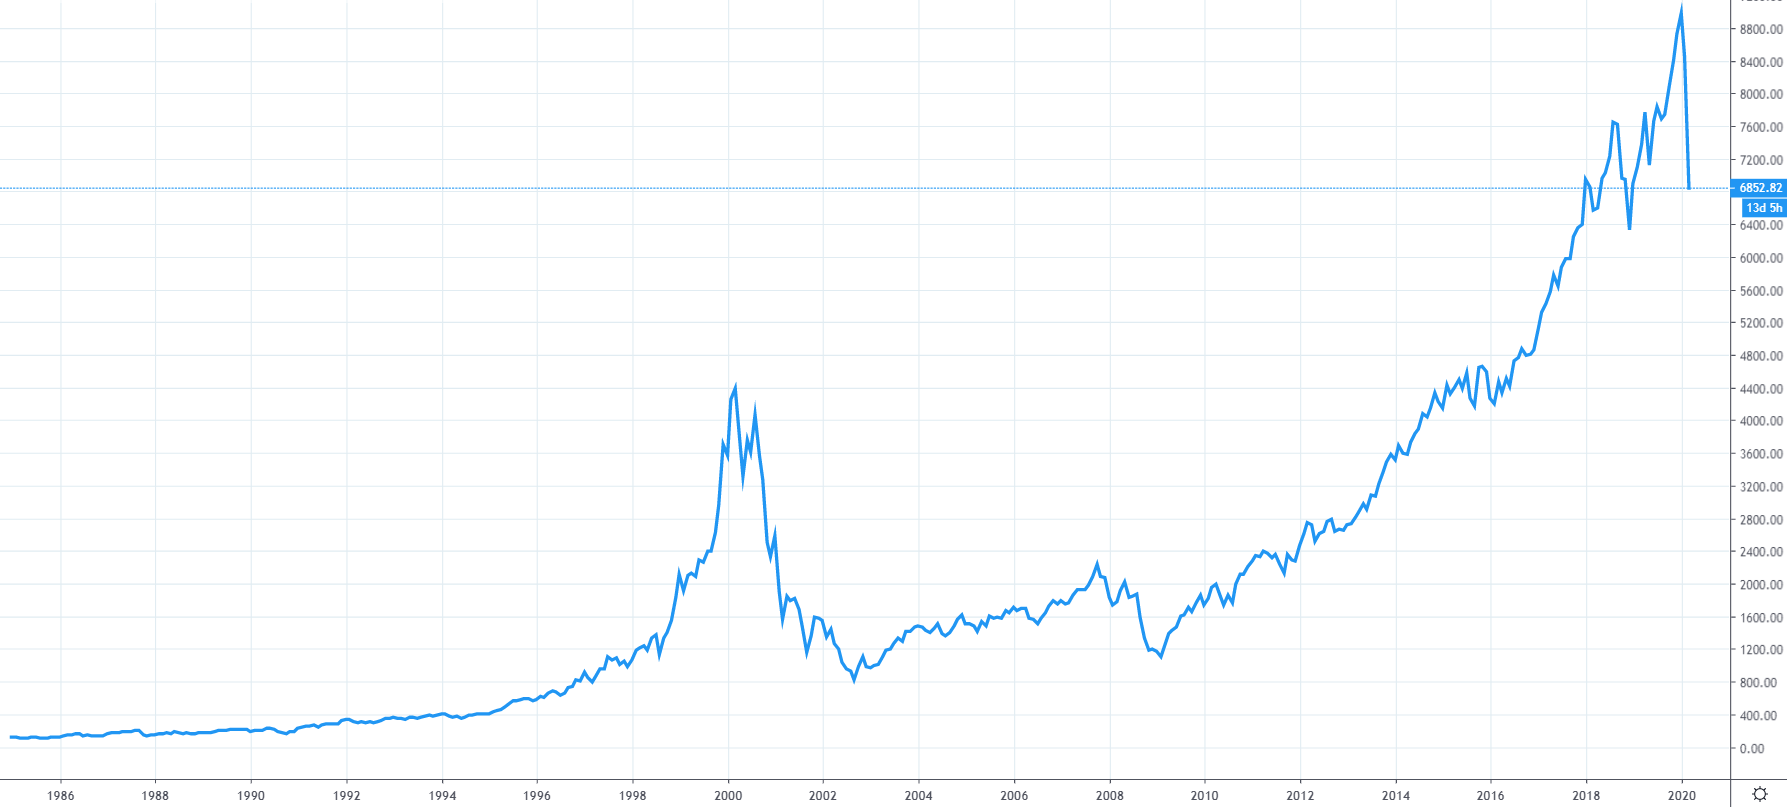 Graf indexu NASDAQ 100